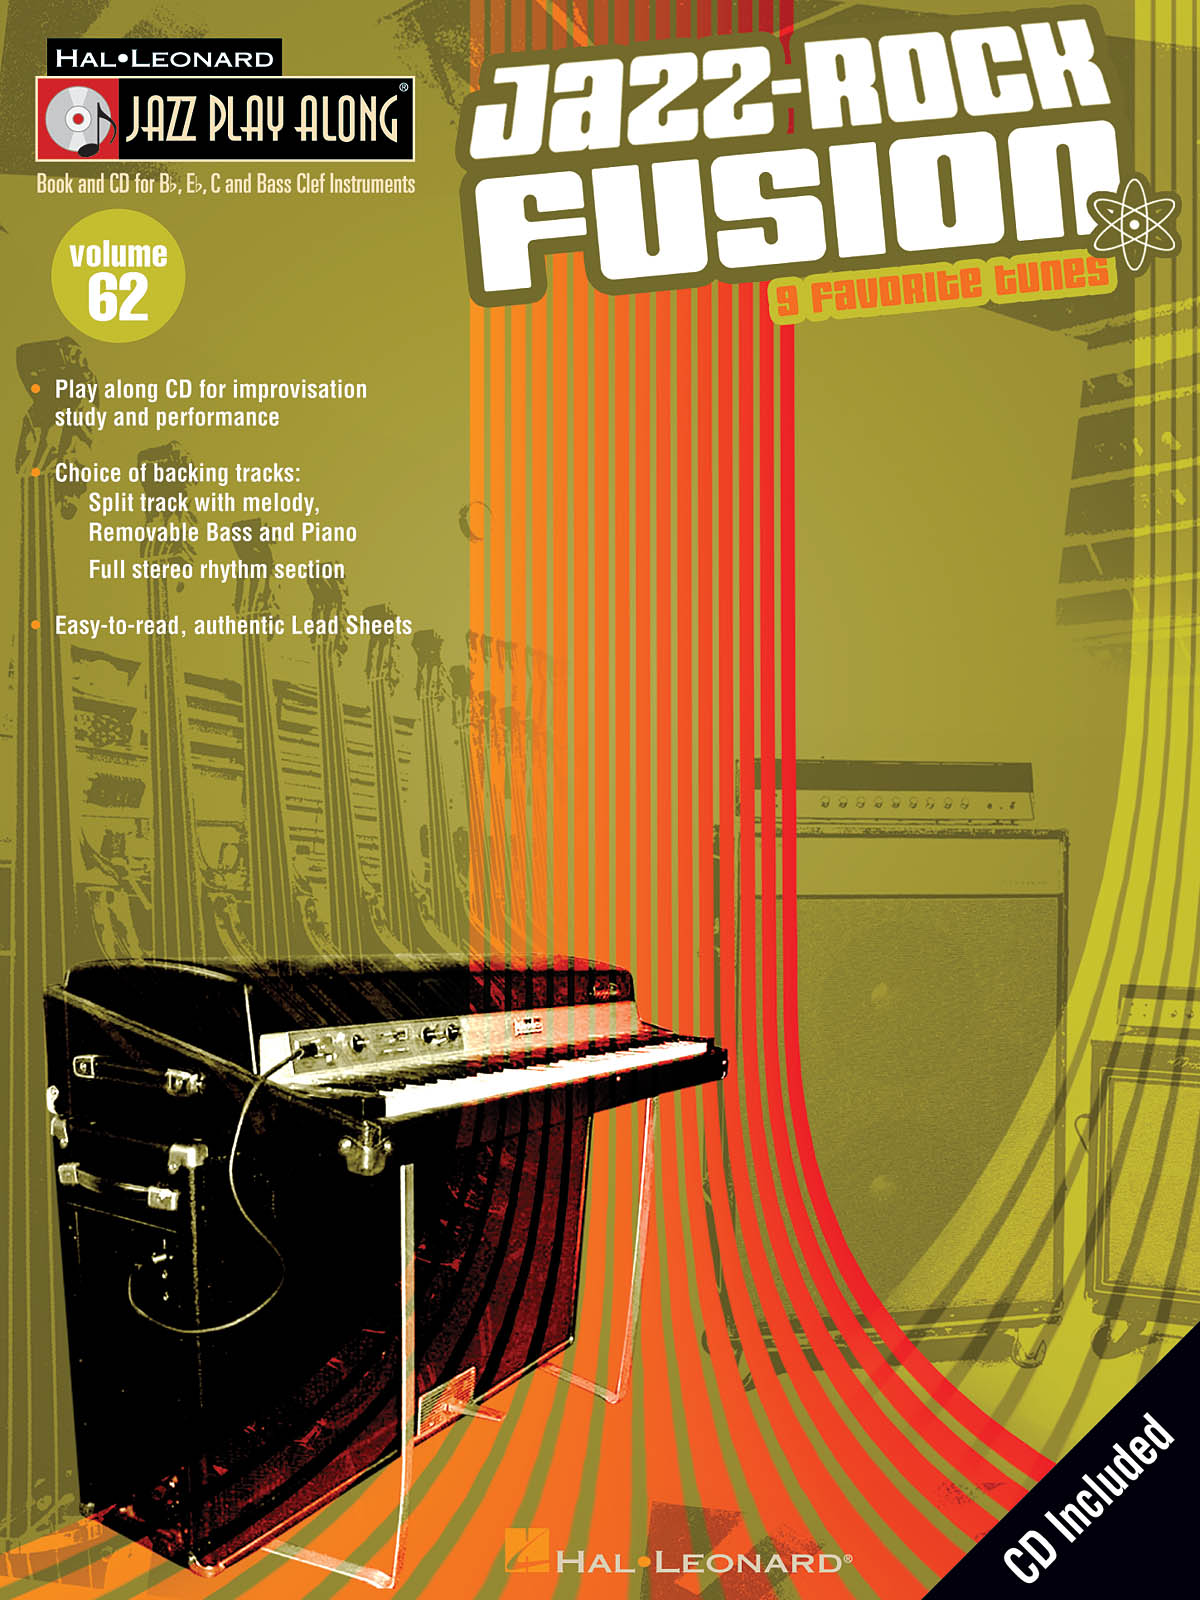 Jazz-Rock Fusion - Jazz Play-Along Volume 62 - noty pro nástroje v ladění C